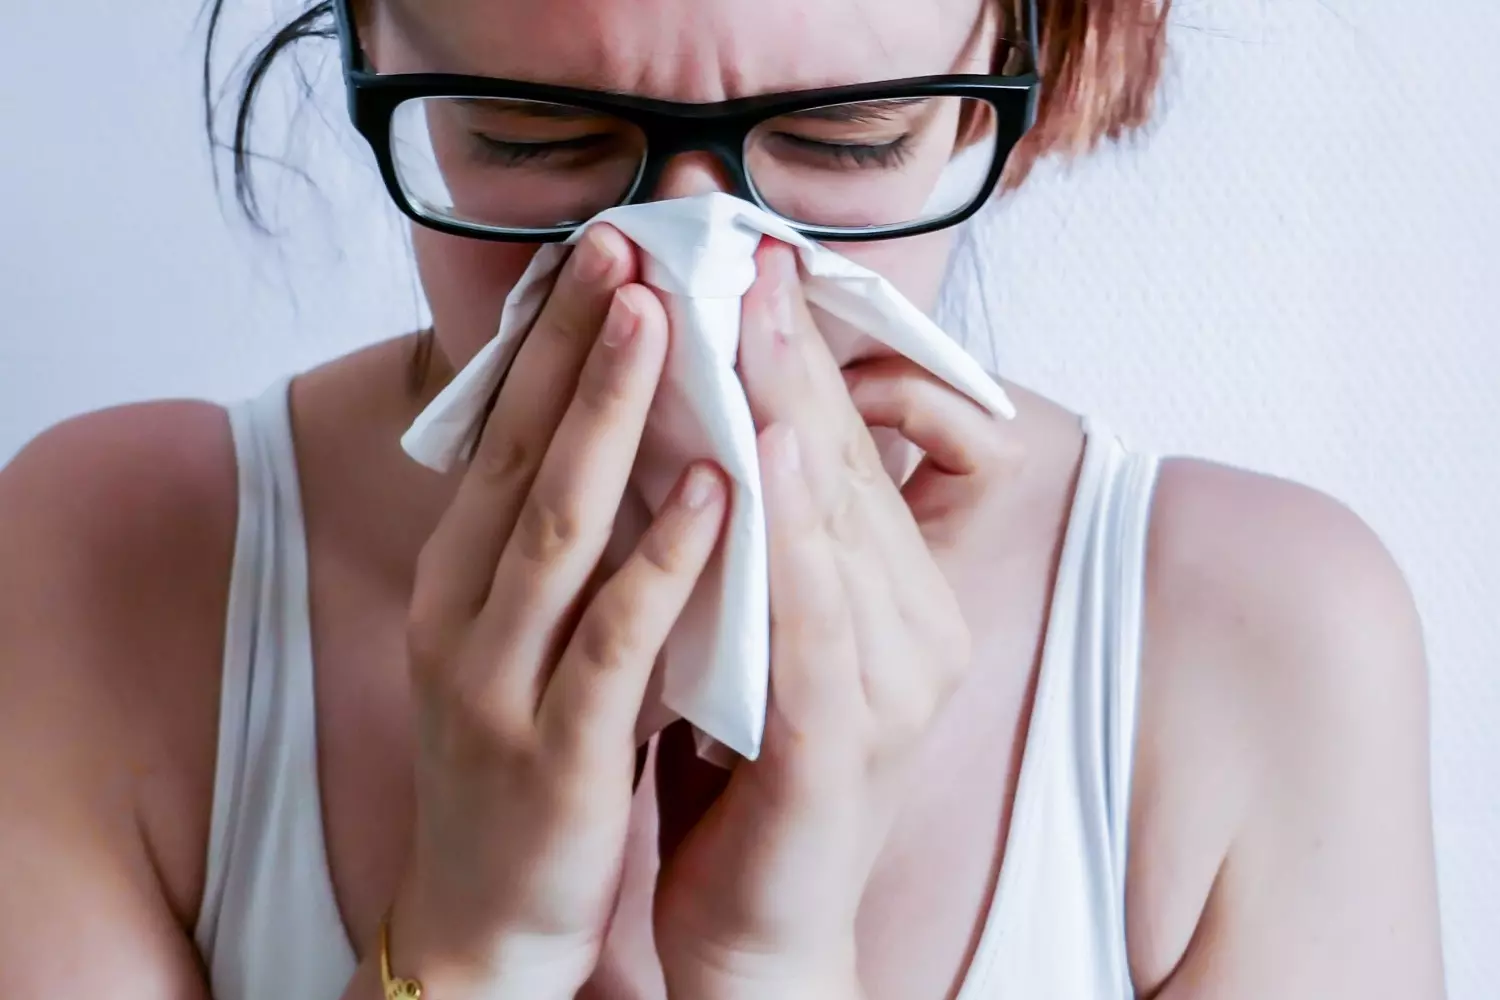 К неприятному запаху изо рта также может аллергия и прочие заболевания, которые вызывают заложенность носа